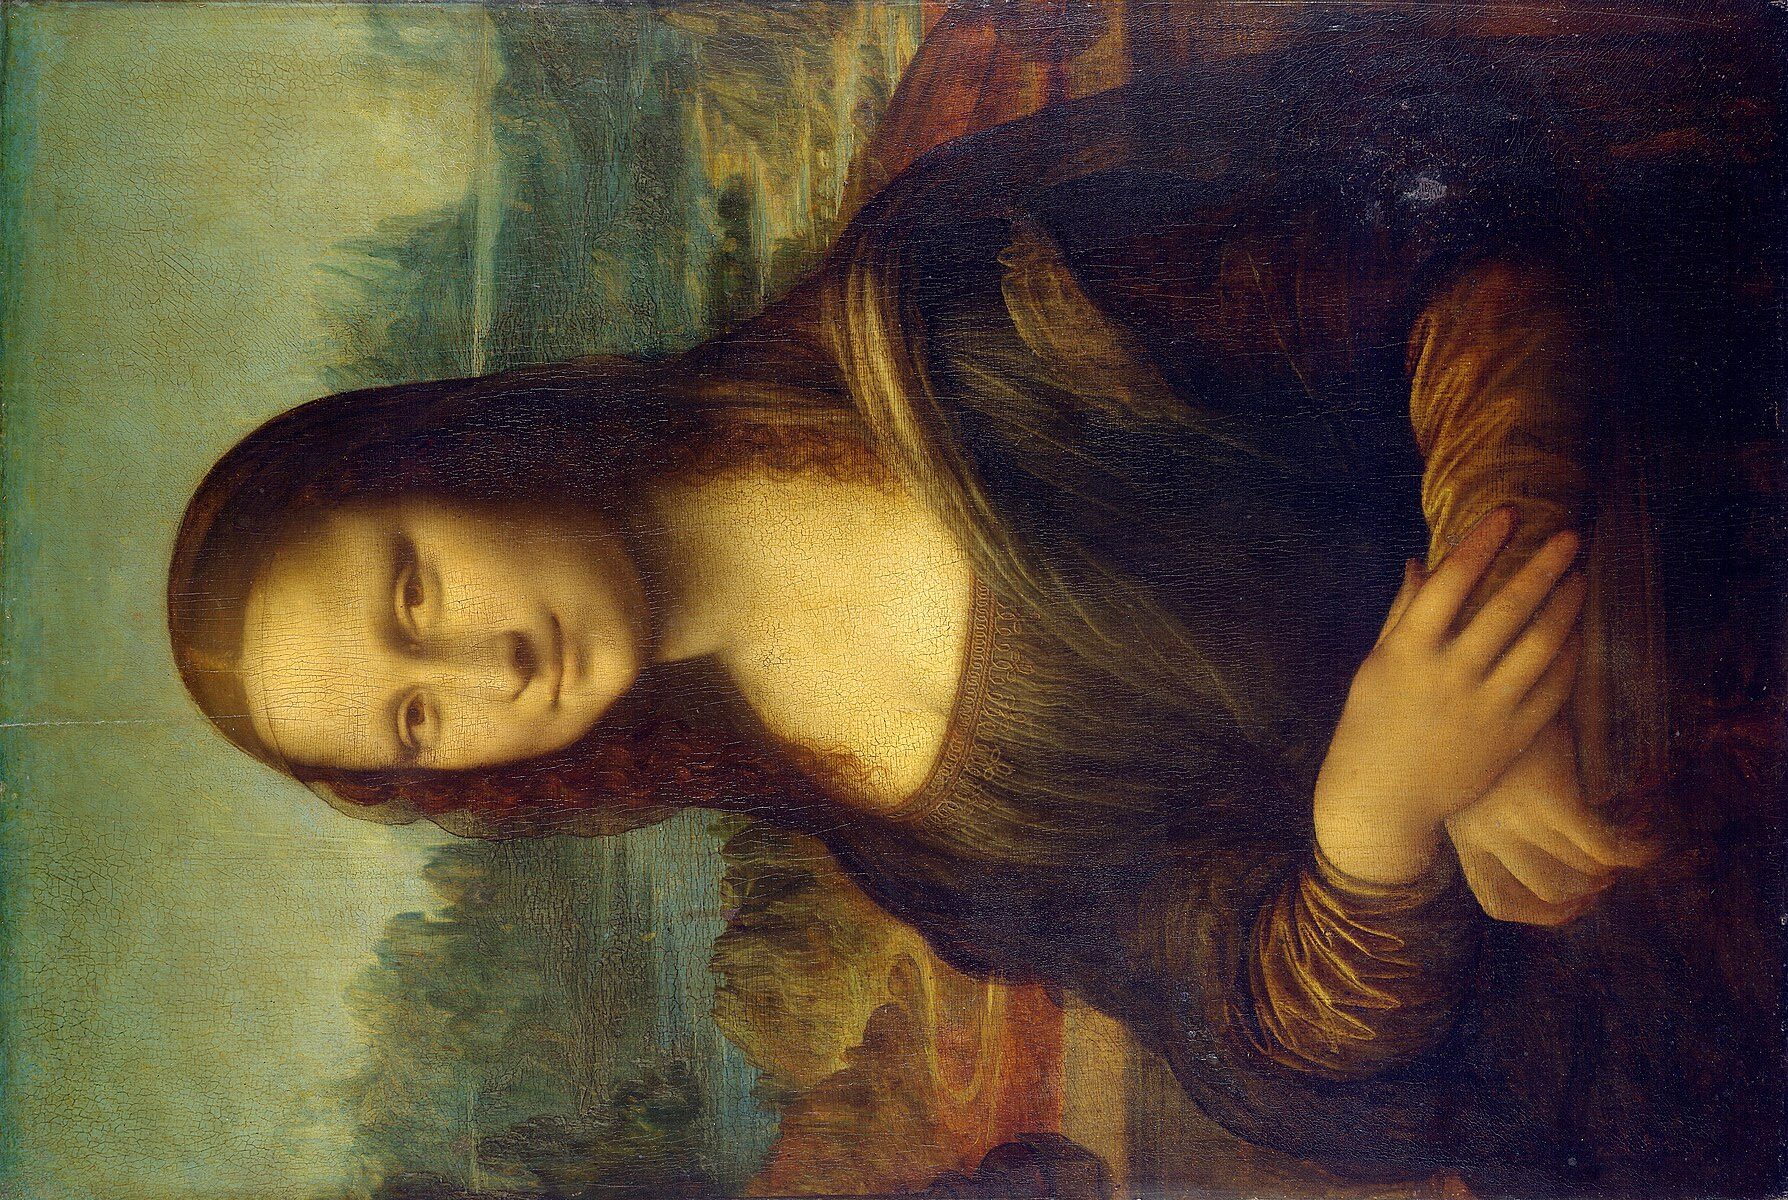 La Gioconda di Leonardo da Vinci: un nuovo studio identificherebbe i luoghi ritratti nel dipinto